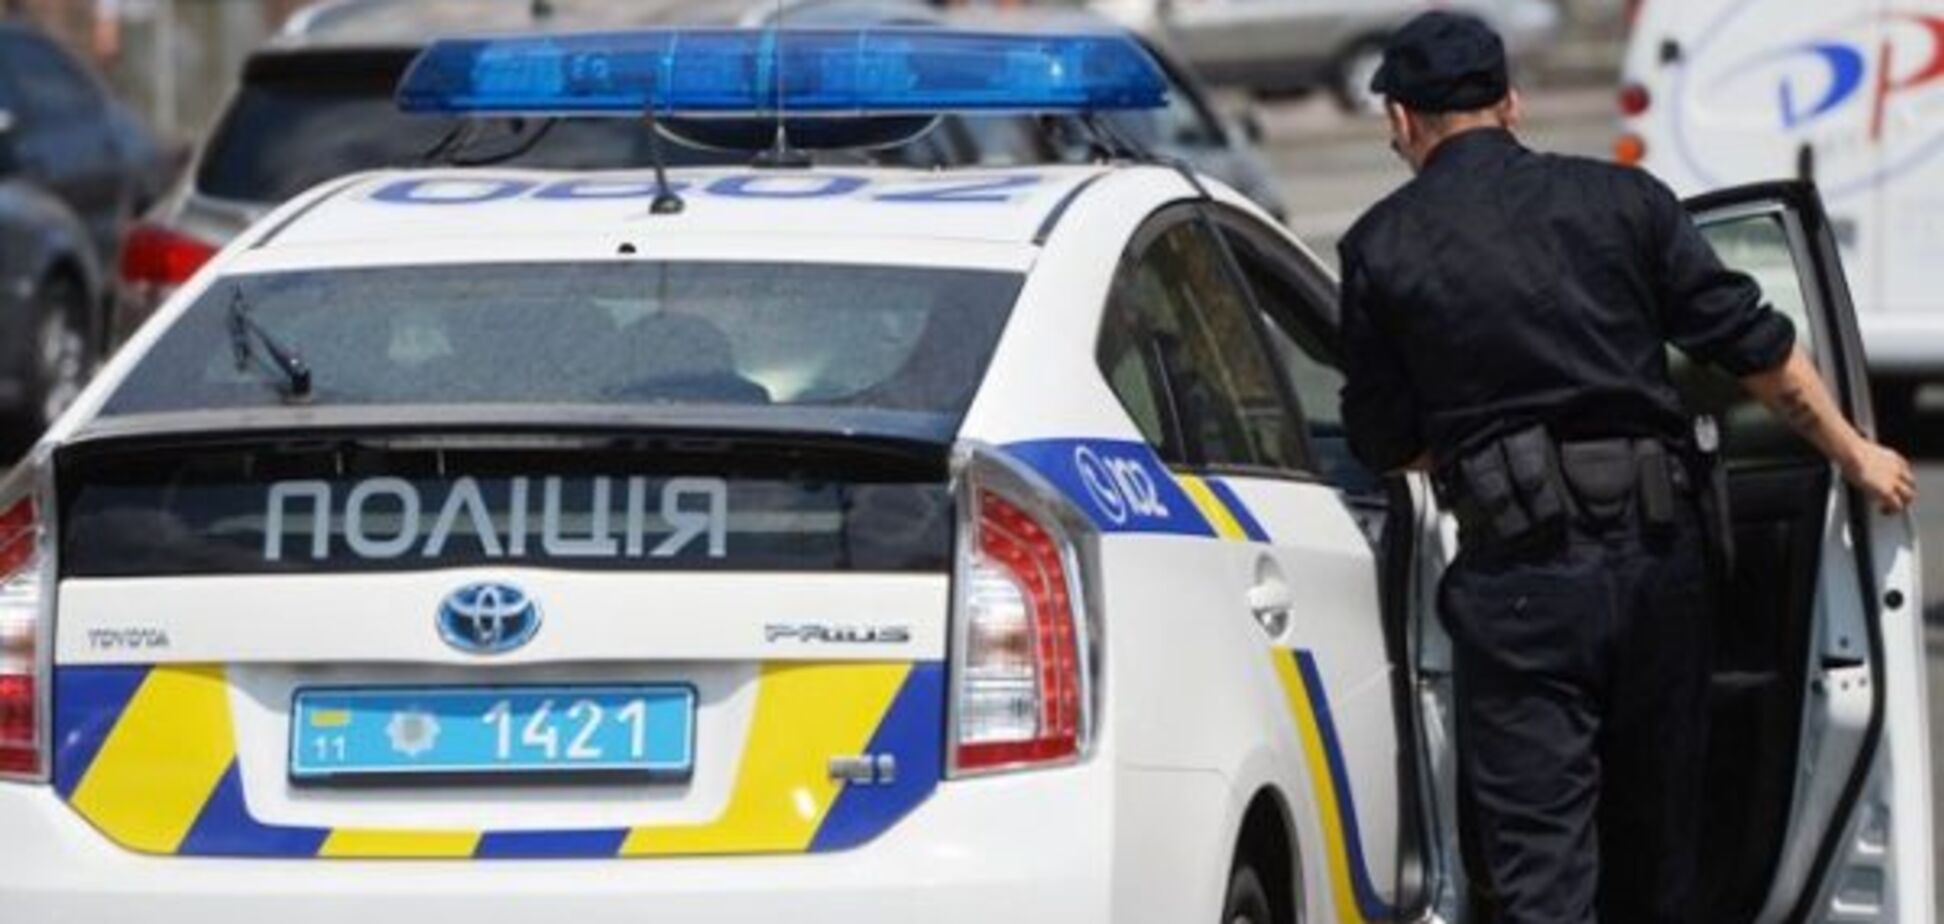 'Скорость превышена': в полиции объяснили странные смс-сообщения водителям в Киеве 